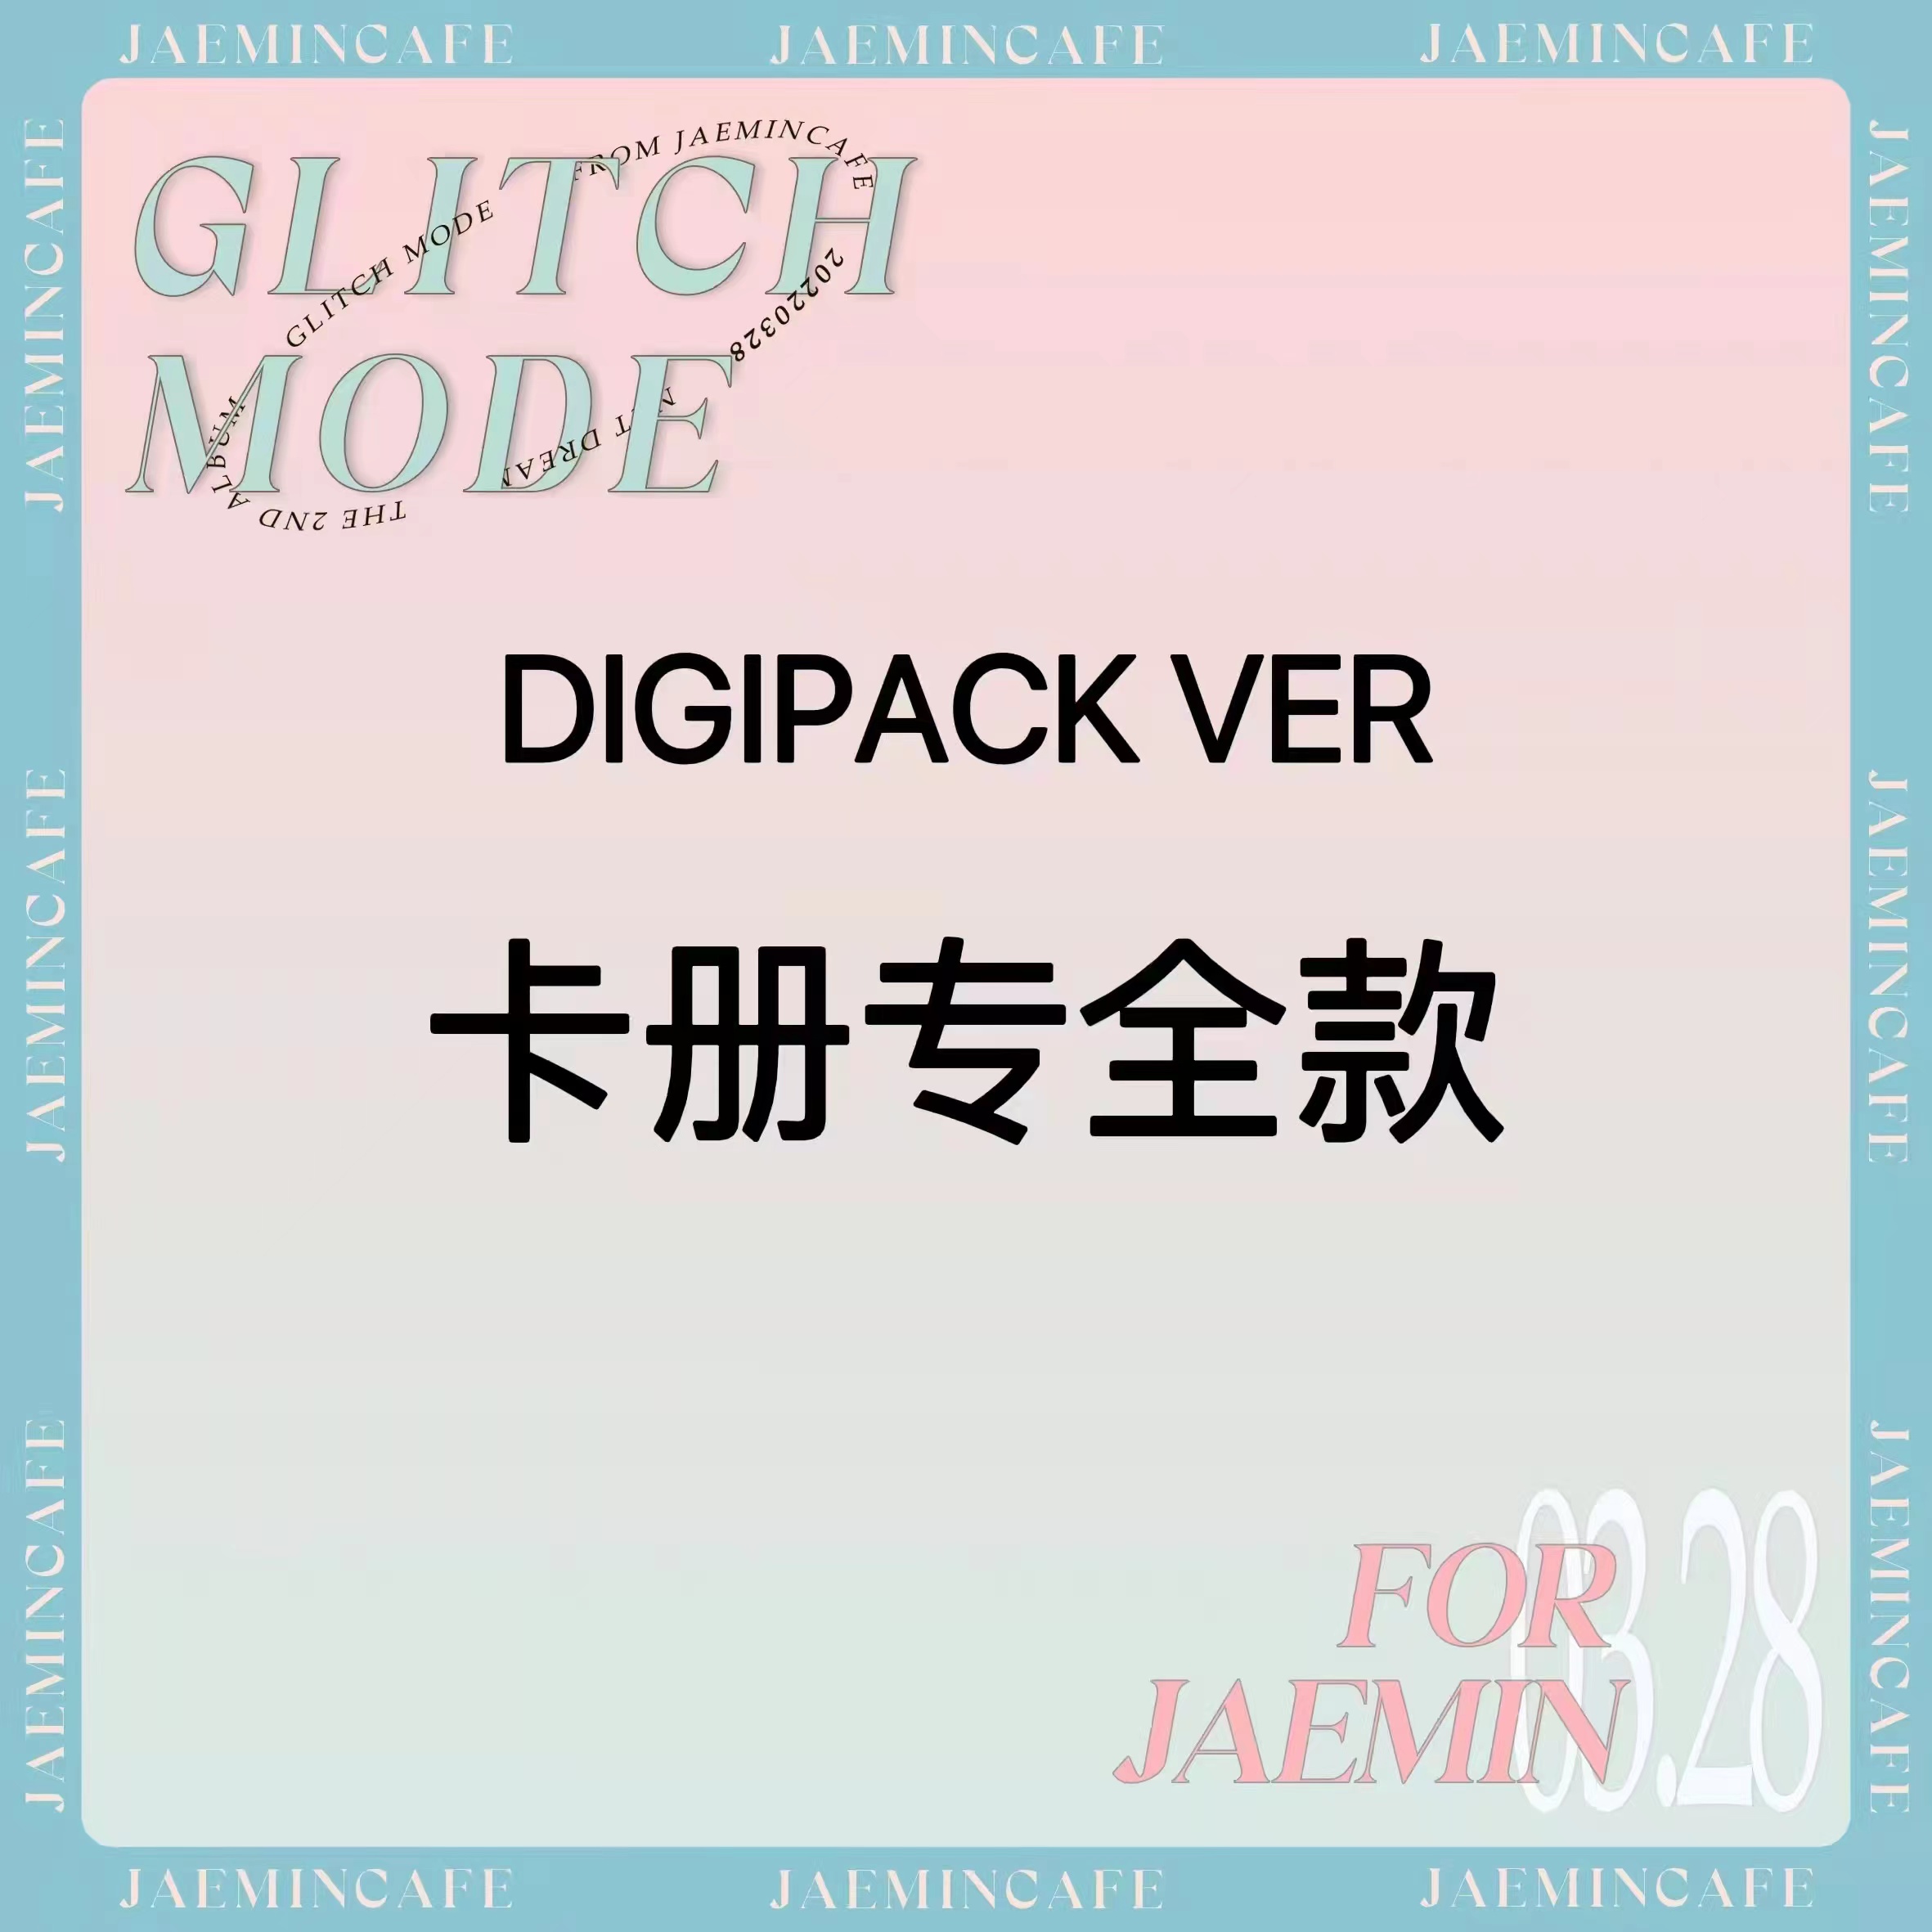 [全款 卡册专] NCT DREAM - 正规2辑 [Glitch Mode] (Digipack Ver.) (随机版本)_罗渽民吧_JAEMINbar